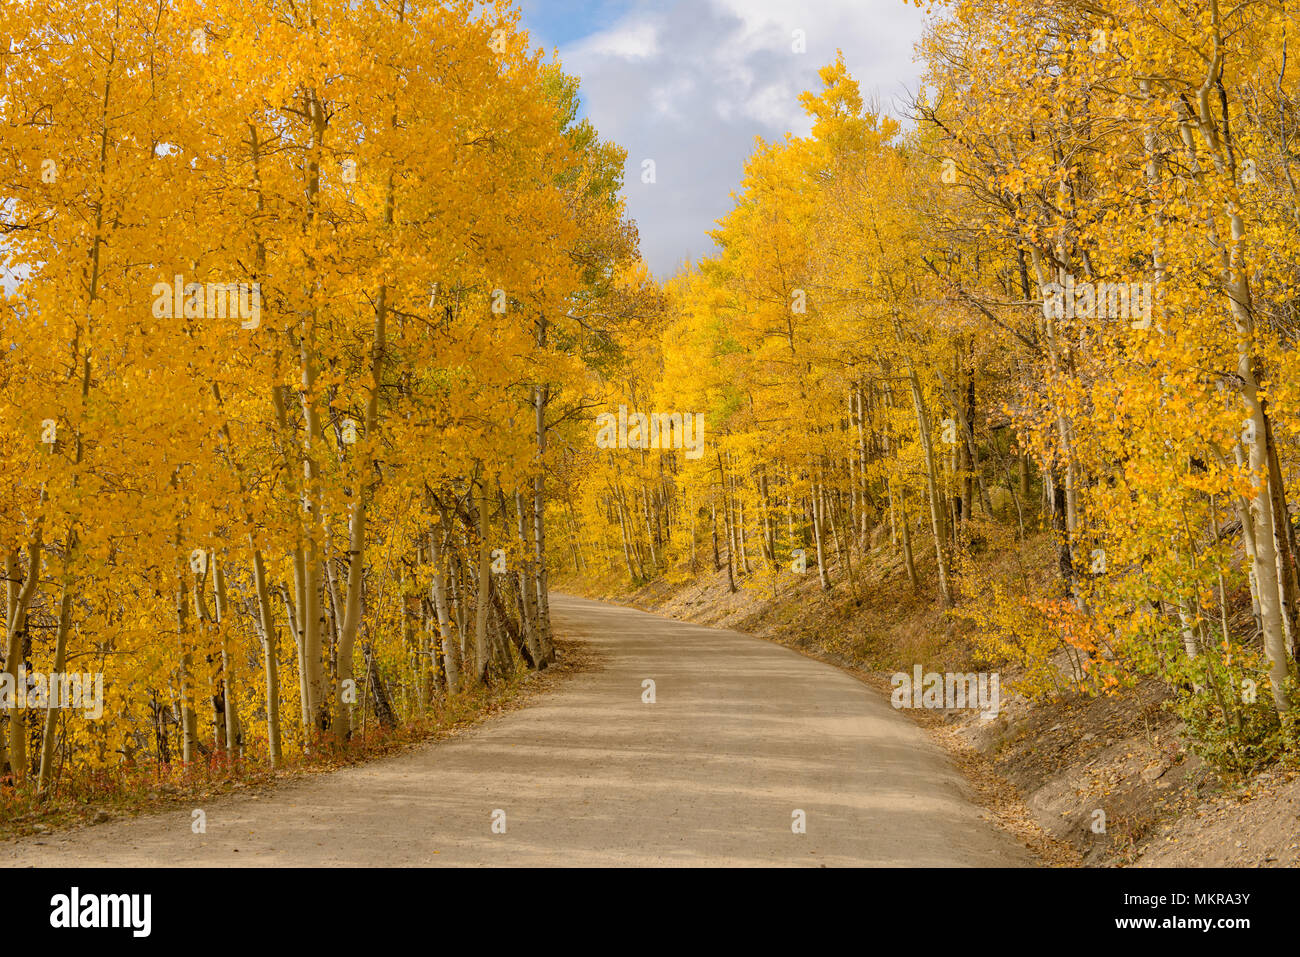 Aspen Grove - Il sole splende su una sterrata strada di montagna, avvolgimento attraverso una fitta Aspen Grove in autunno dorato del Colorado, Boreas Pass, CO, Stati Uniti d'America. Foto Stock